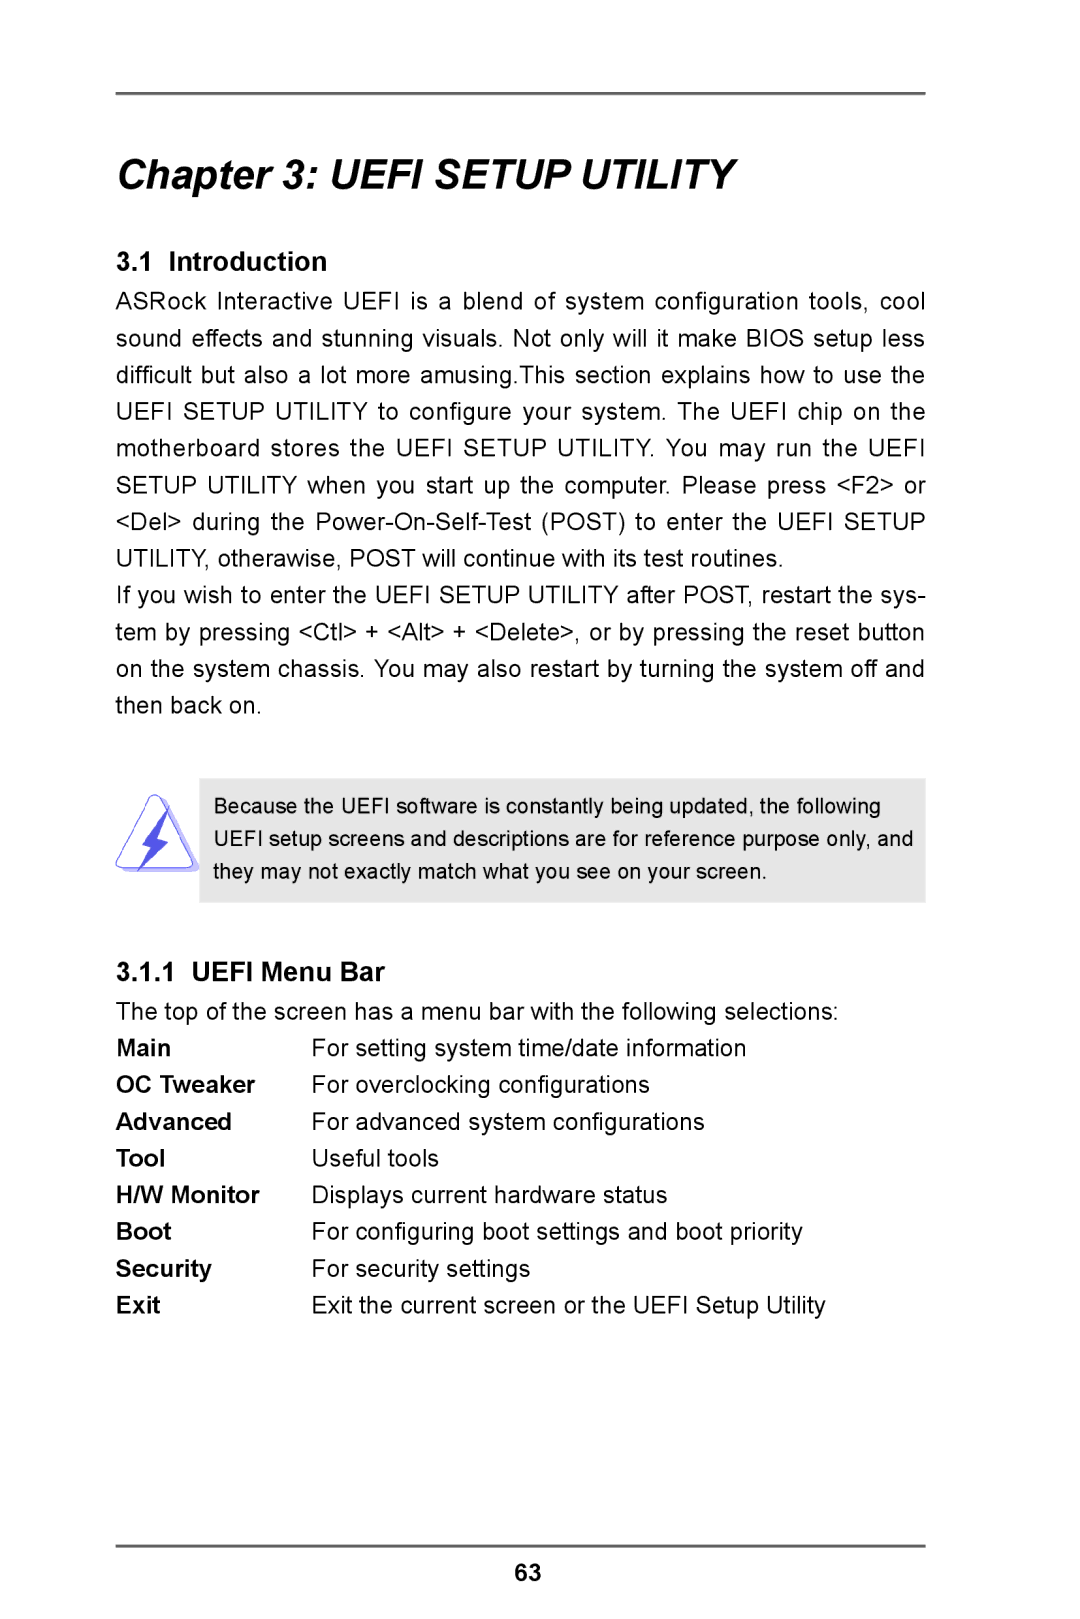 ASRock Z77 Extreme11 manual Introduction, Uefi Menu Bar 